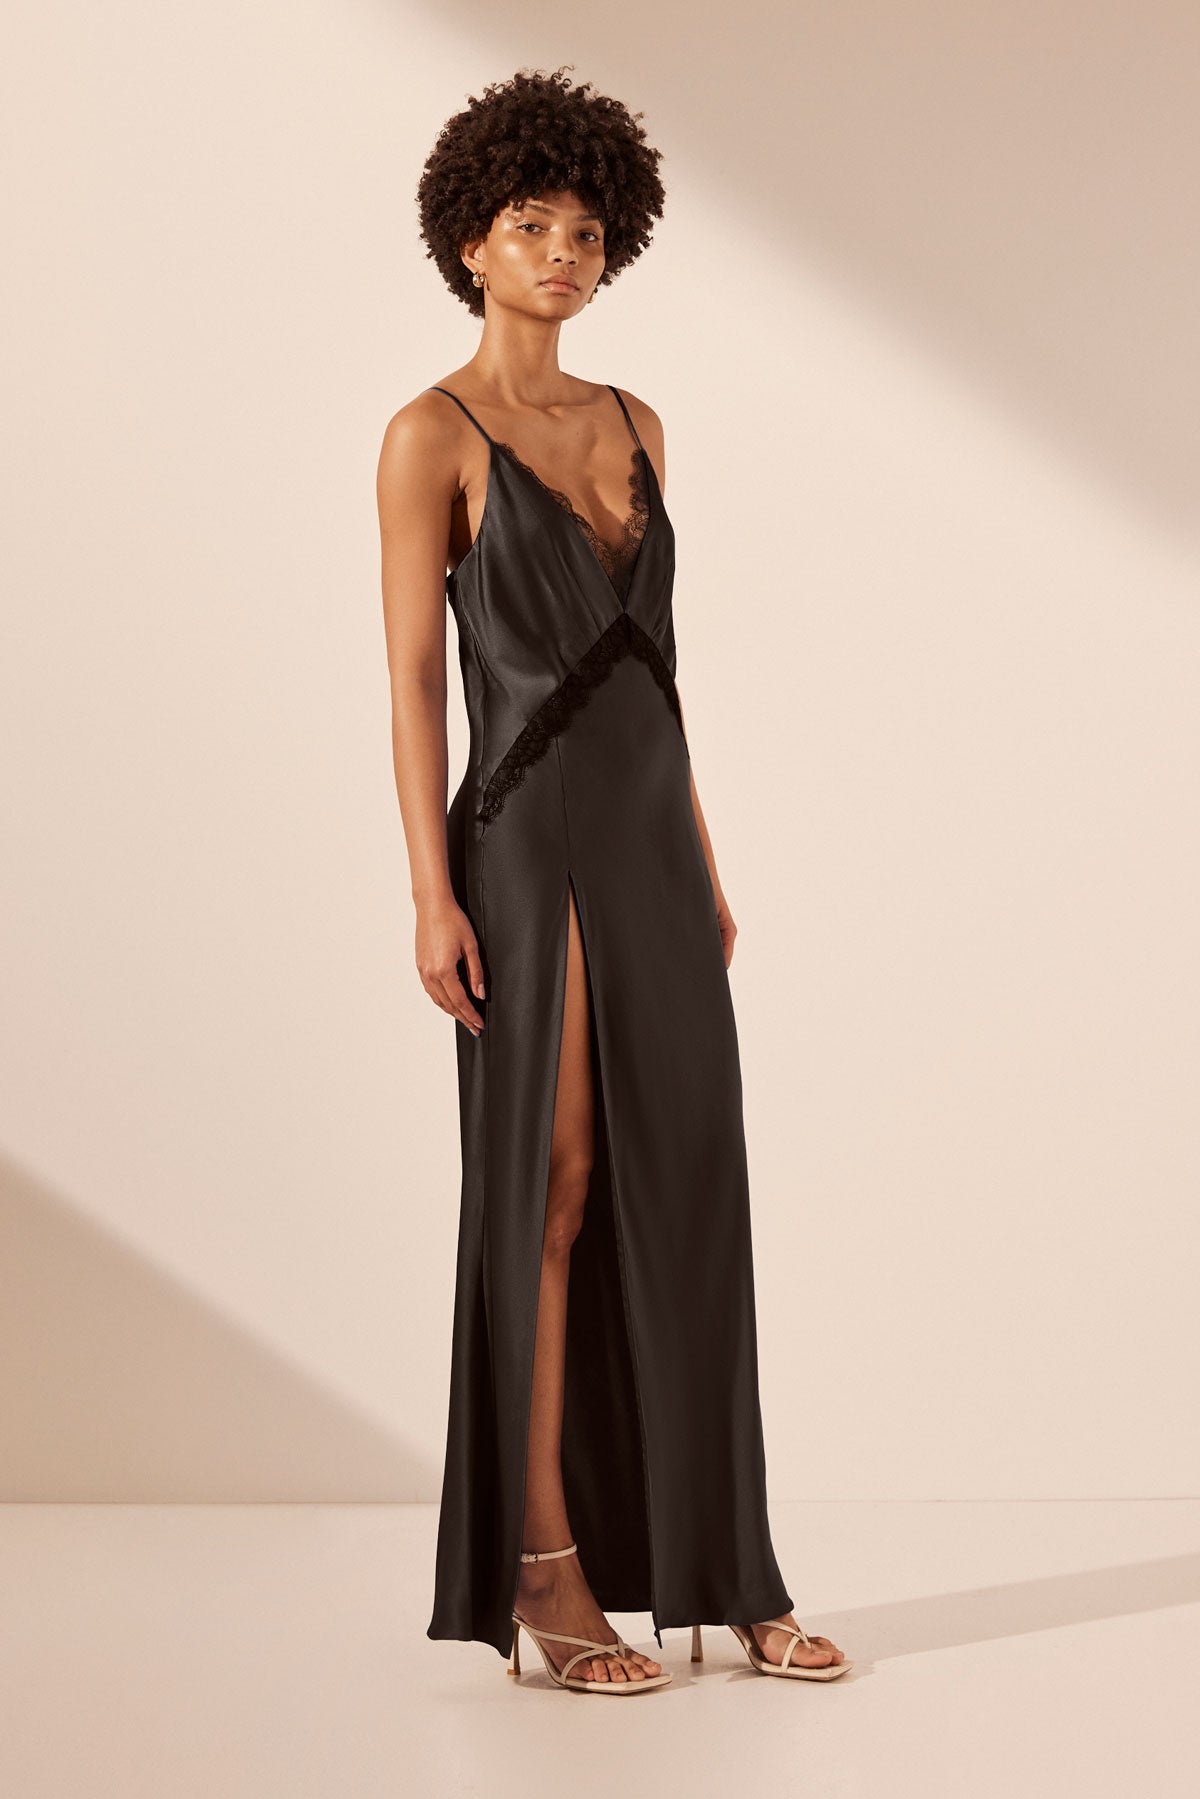 Leticia Silk Lace Split Maxi Dress | Black | Dresses | Shona Joy